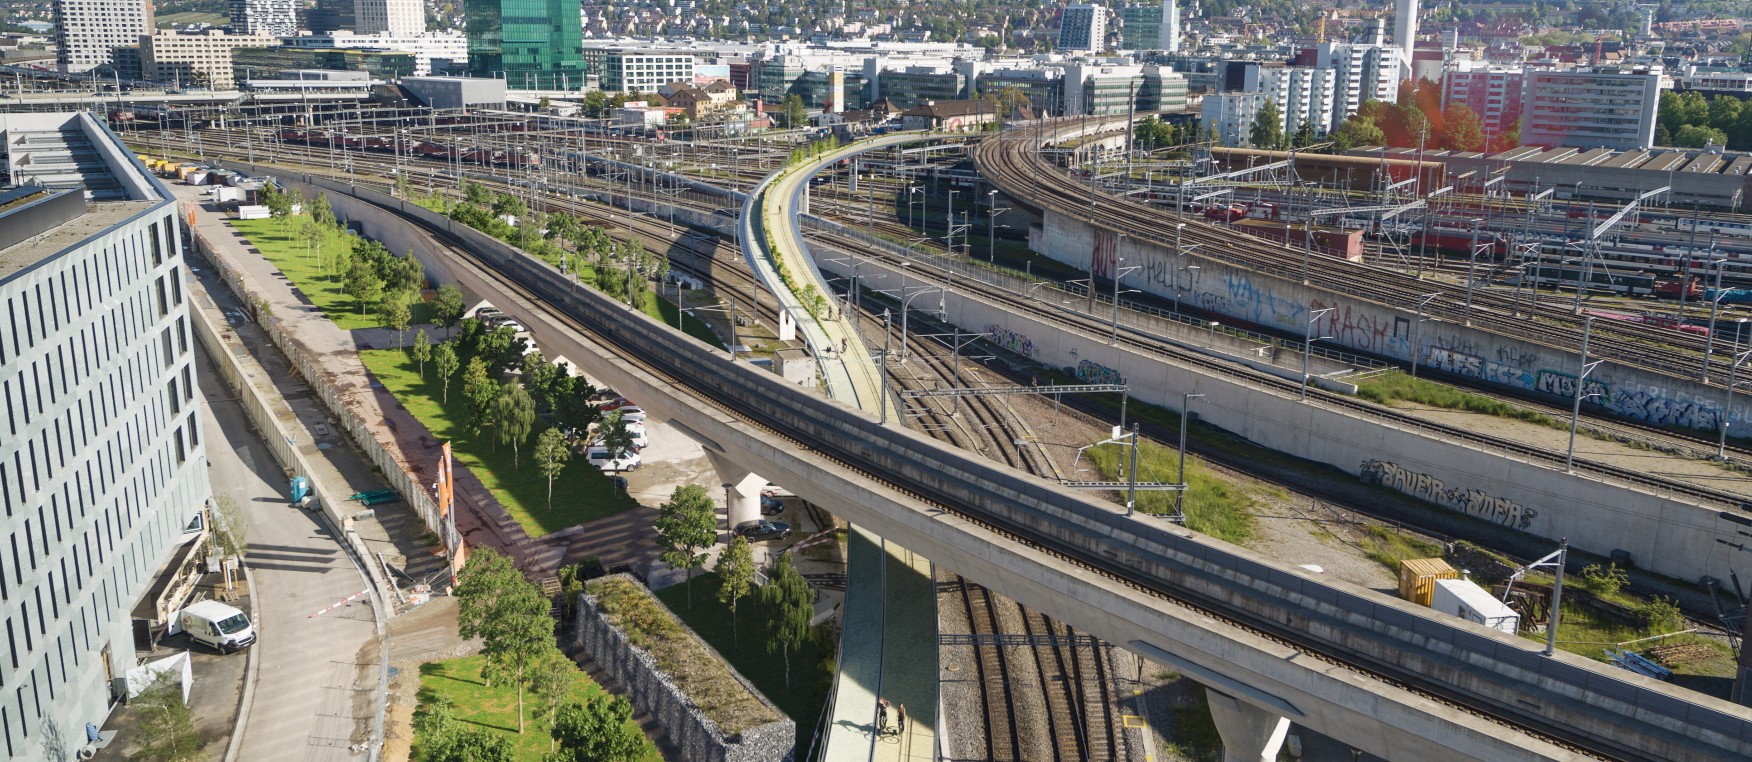 Die Brücke wird vom PJZ zum Lettenviadukt reichen (Visualisierung)